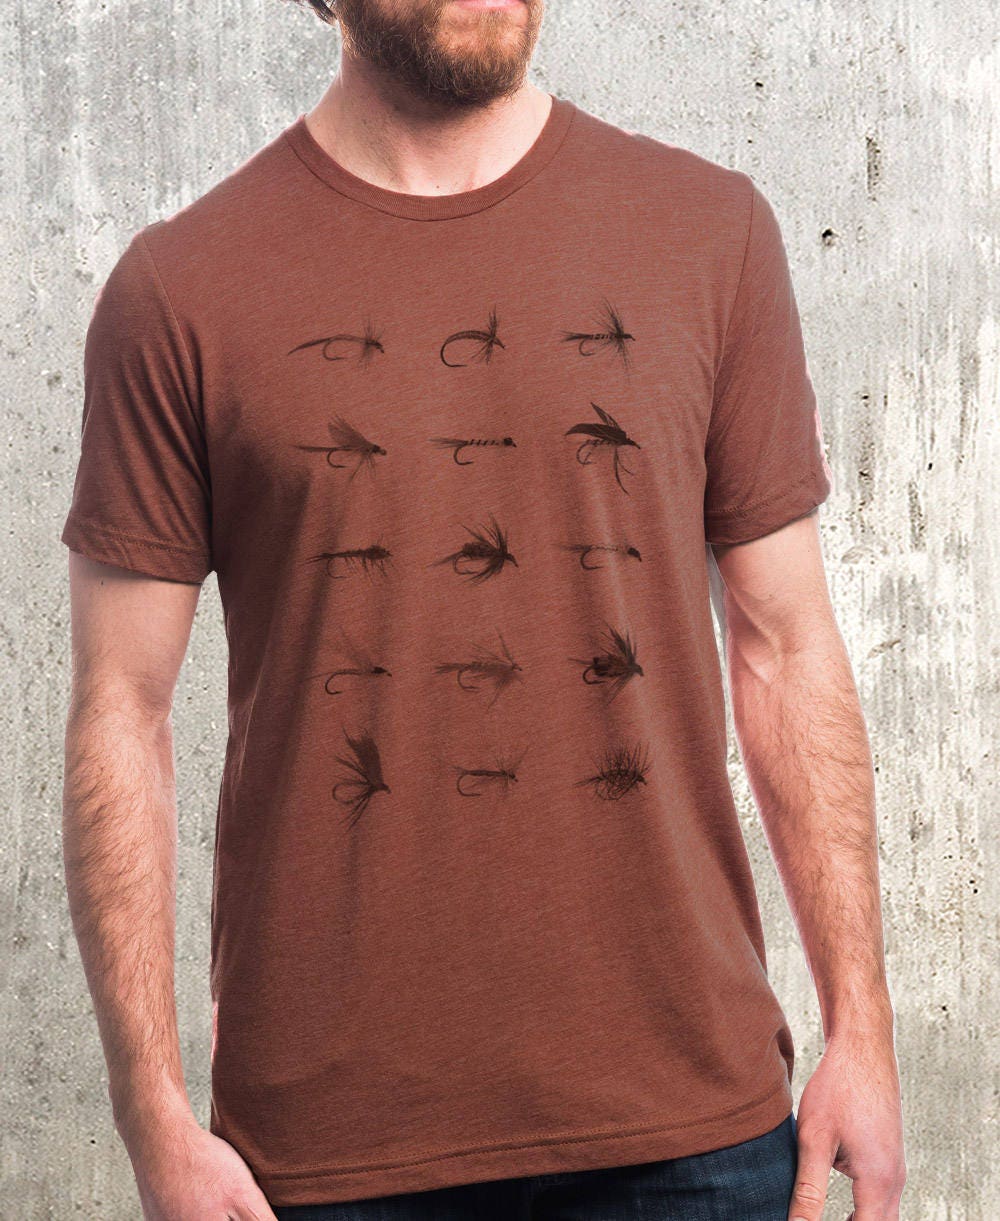 Fly Fishing Flies Shirt - Mens Fish Shirt - Men's Fishing T Shirt - Christmas Fishing Dad Gift - Fly Fishing Gifts